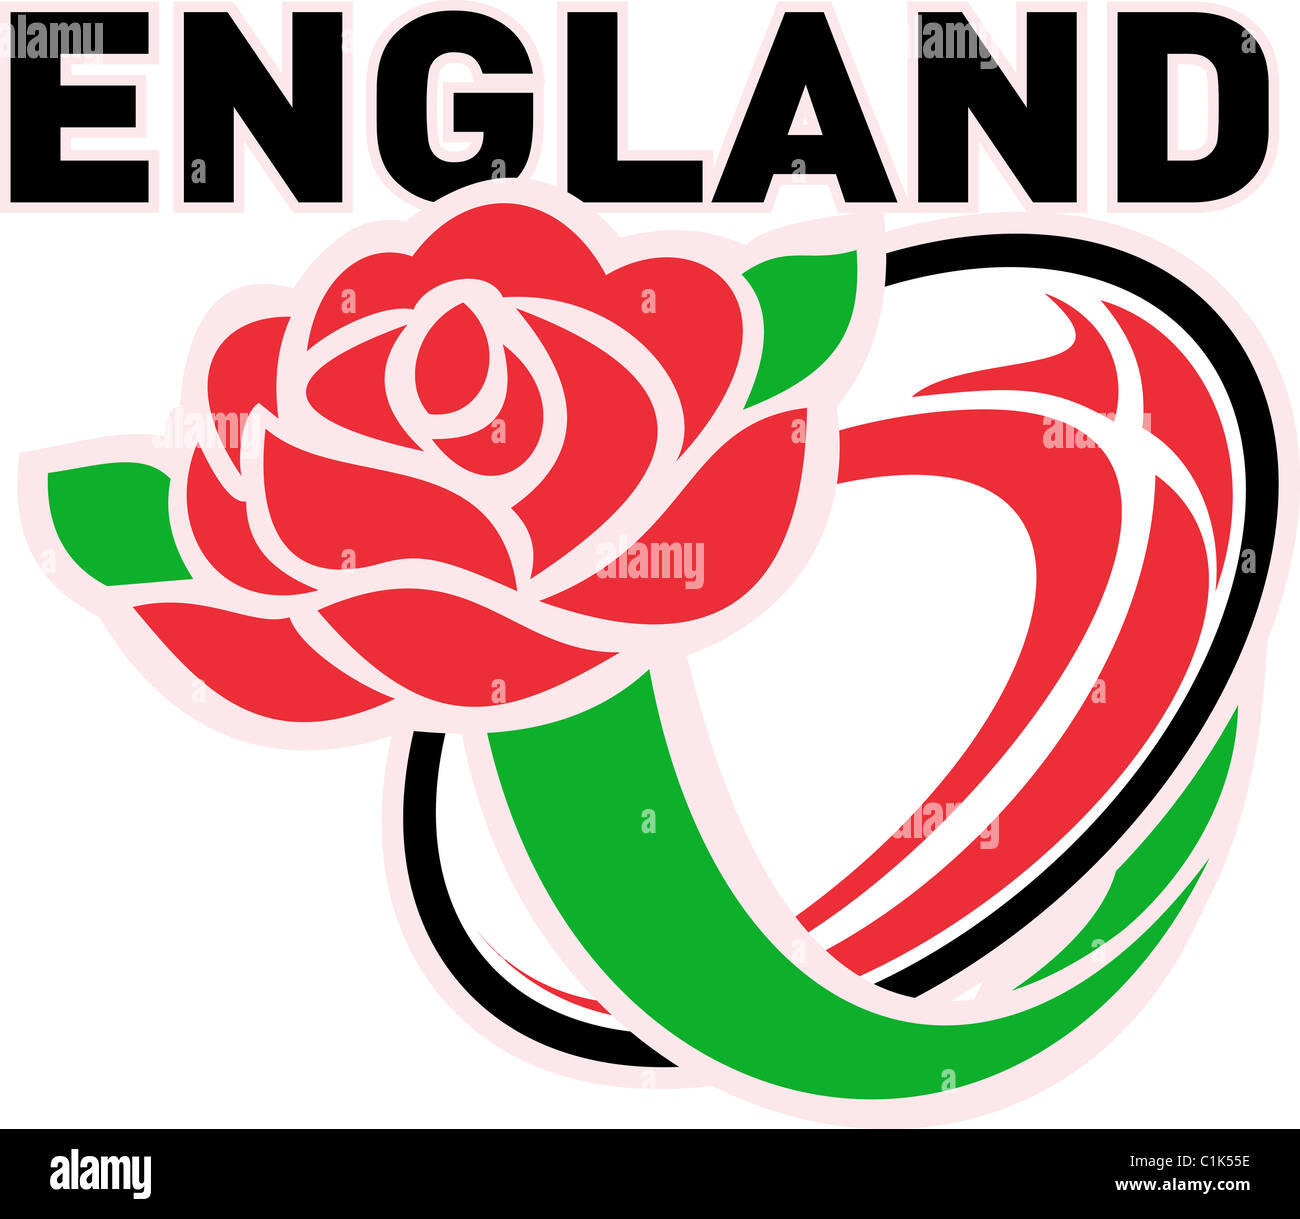 Abbildung von einem roten englischen rose mit Rugby-Ball fliegen aus und Worte "England" Stockfoto